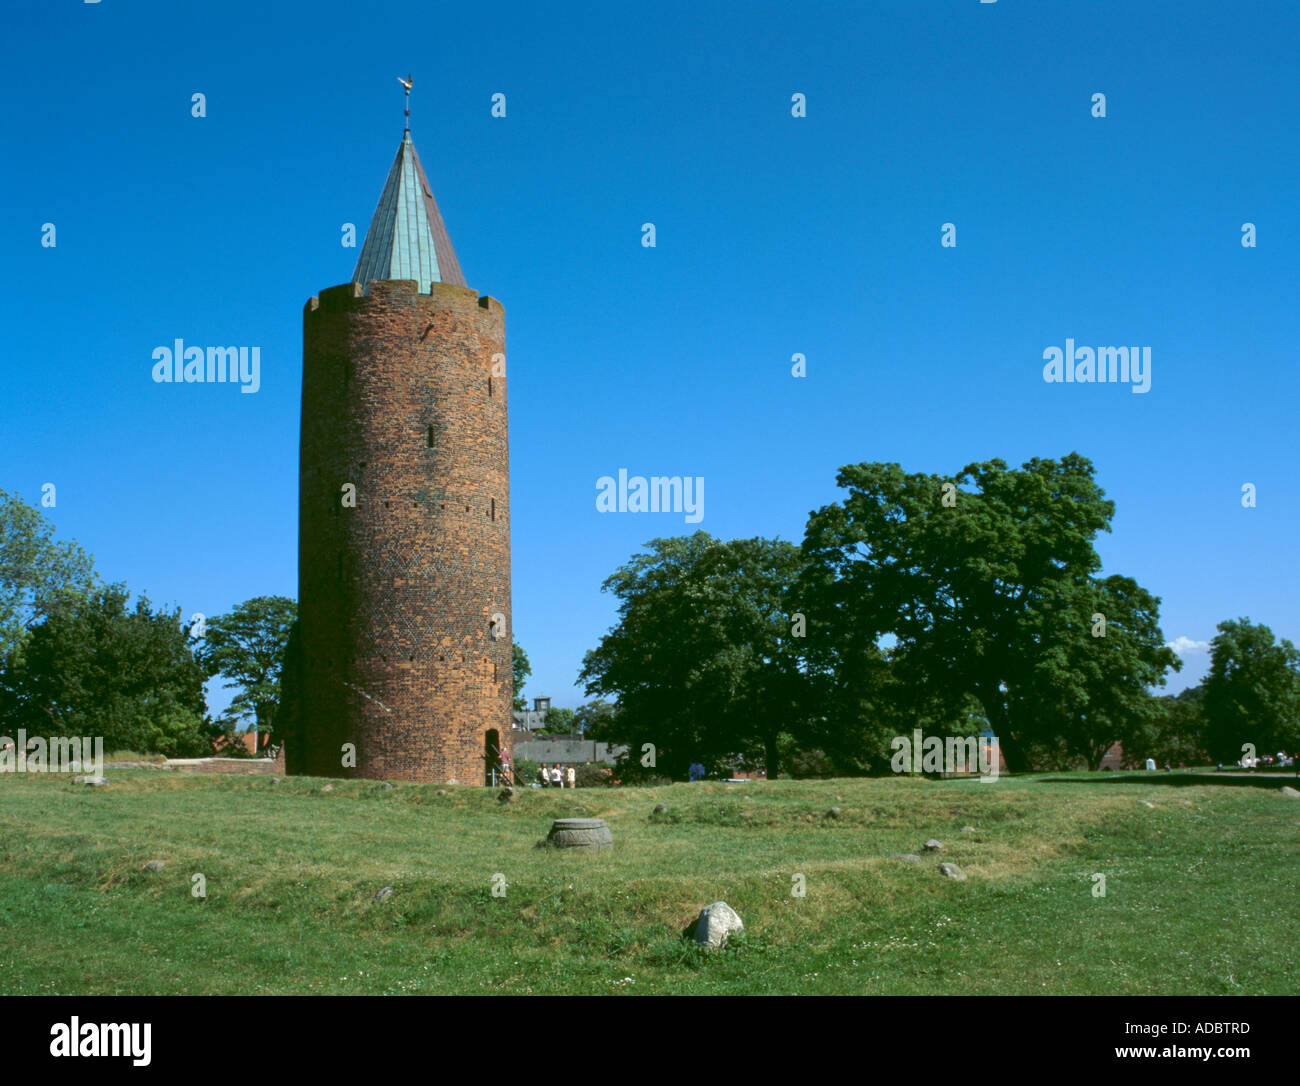 Gåsetårnet, or Goose Tower, Vordingborg Castle, Vordingborg, Sjælland (Zealand), Denmark. Stock Photo